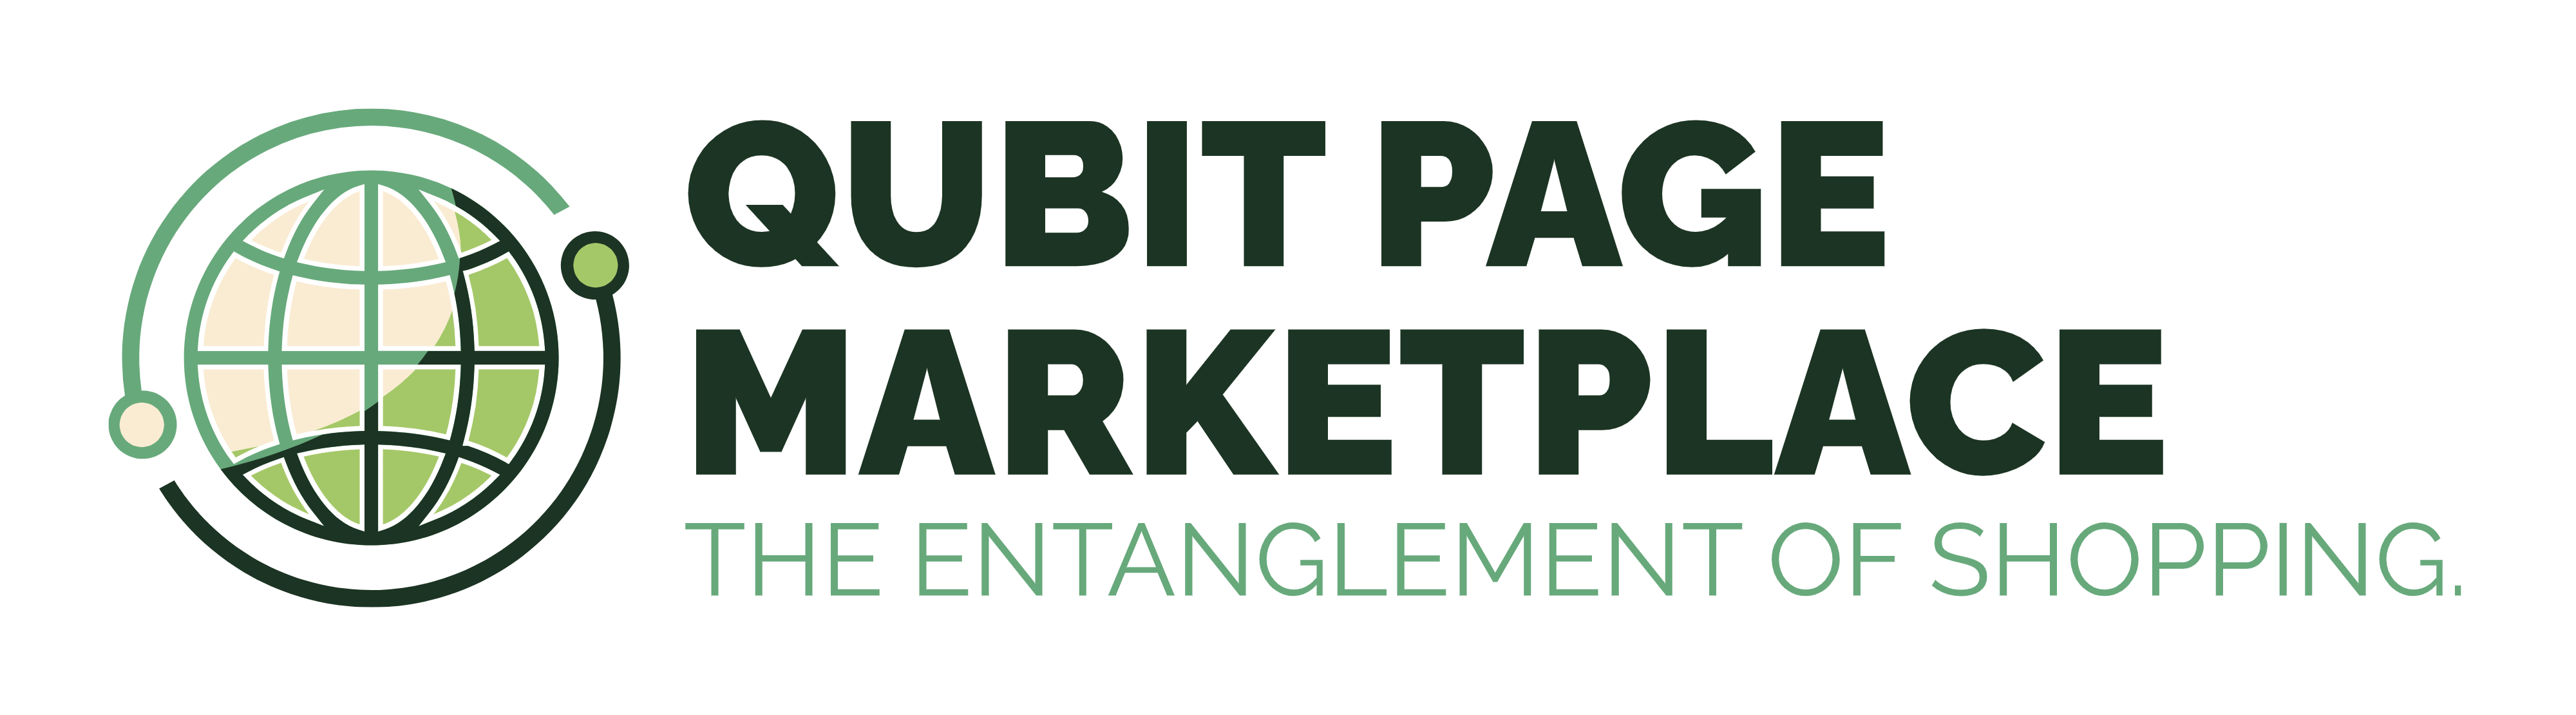 Qubit Page Marketplace